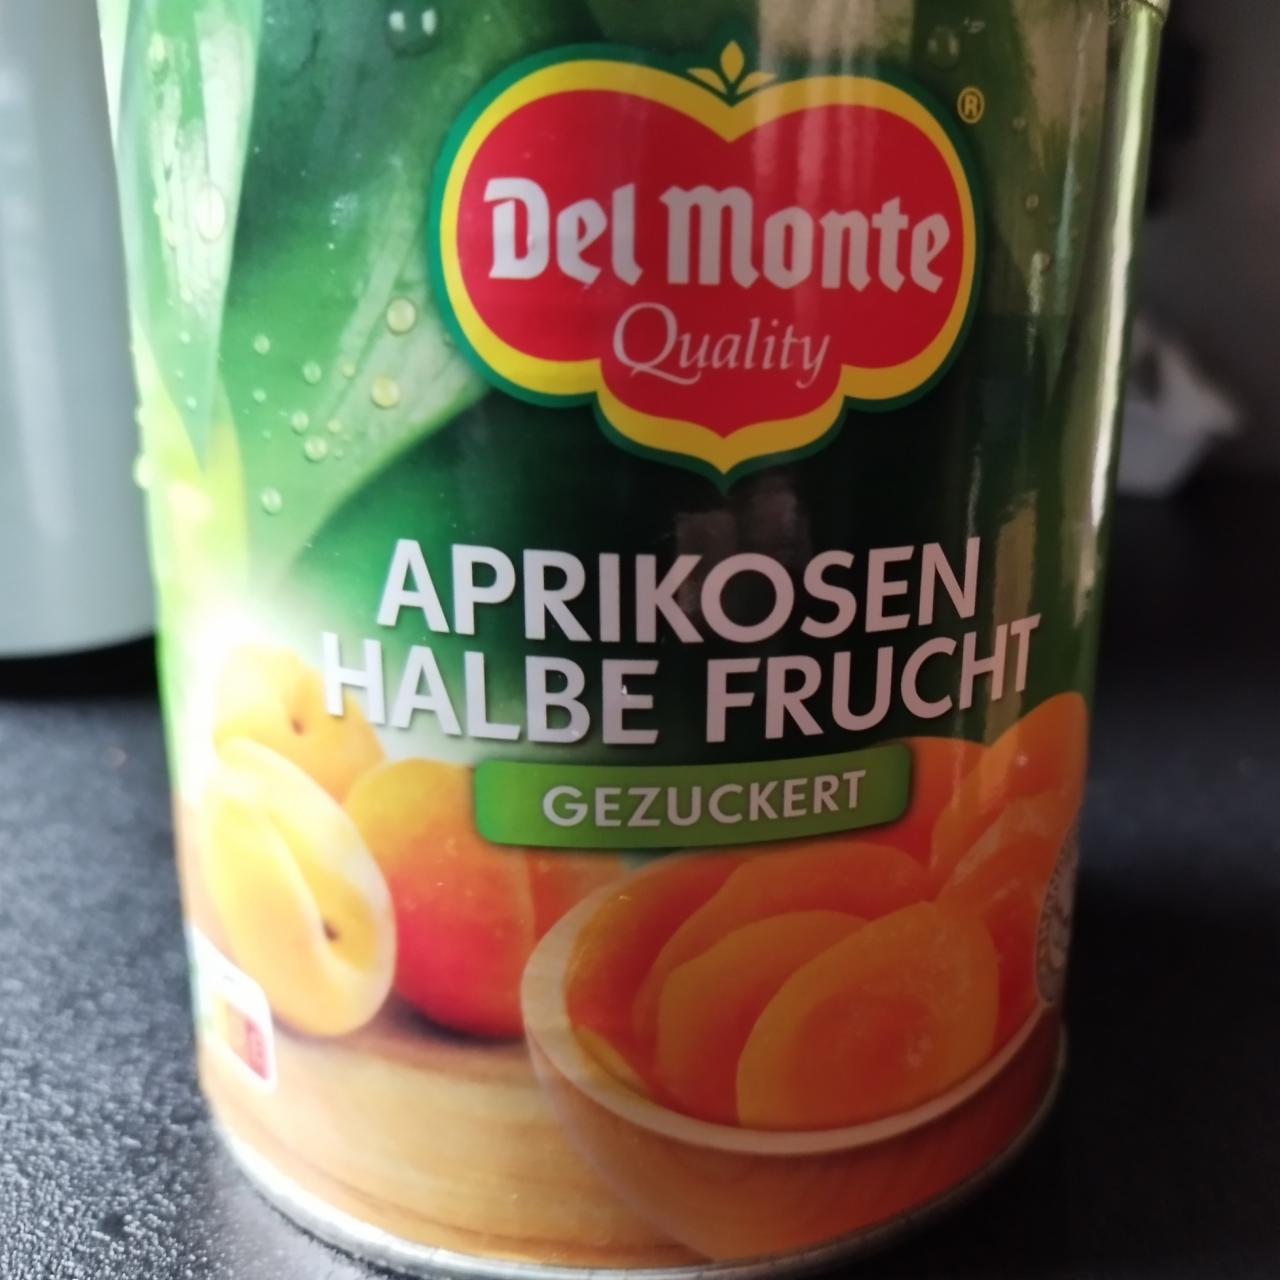 Fotografie - Aprikose halbe frucht gezuckert Del Monte Quality